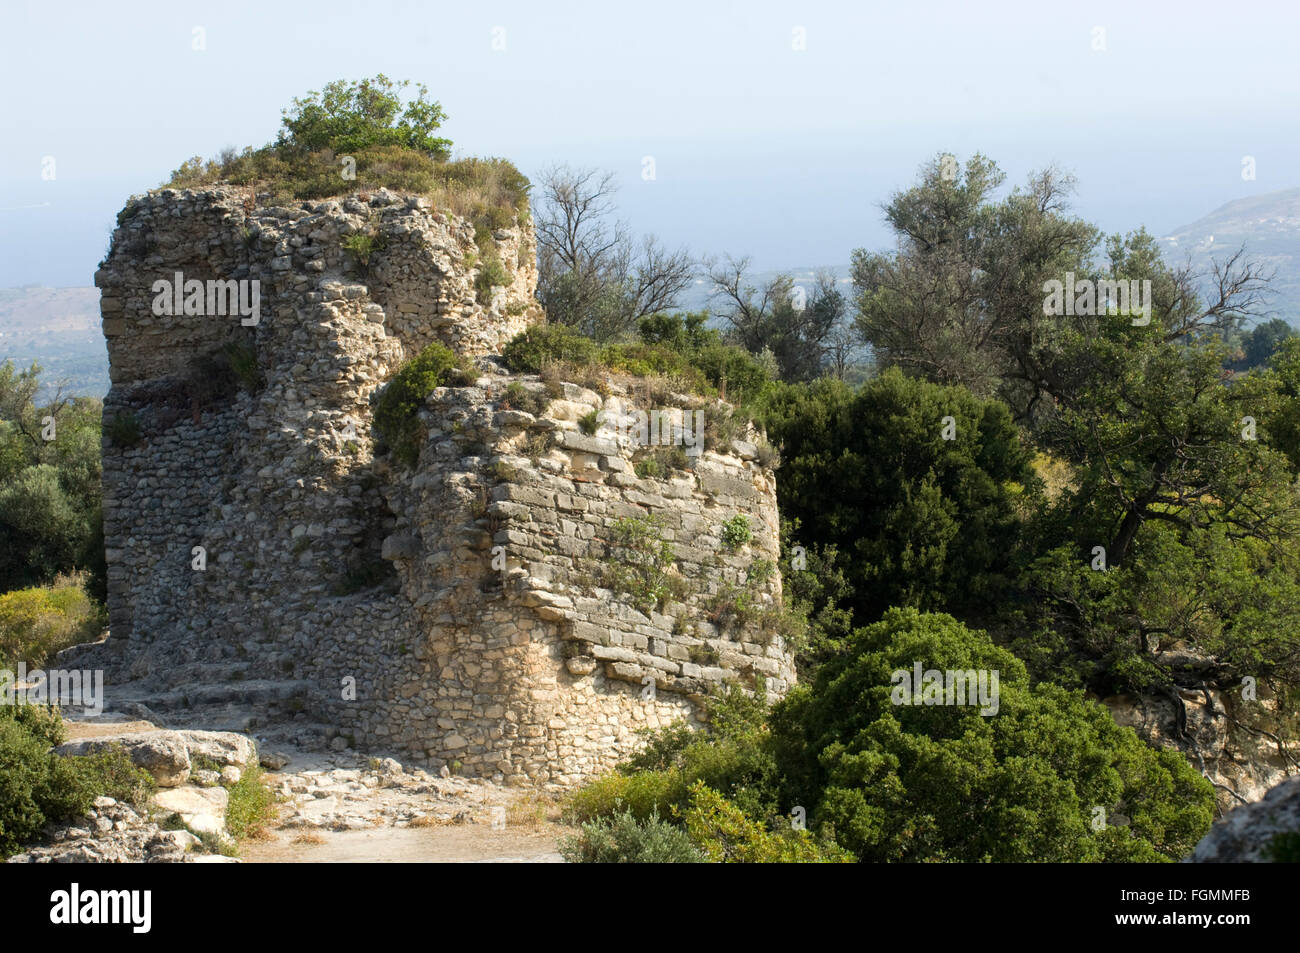 Griechenland, Kreta, Archea Eleftherna, Ruine eines Turms der Stadtbefestigung der antiken Stadt Eleuderna. Stock Photo